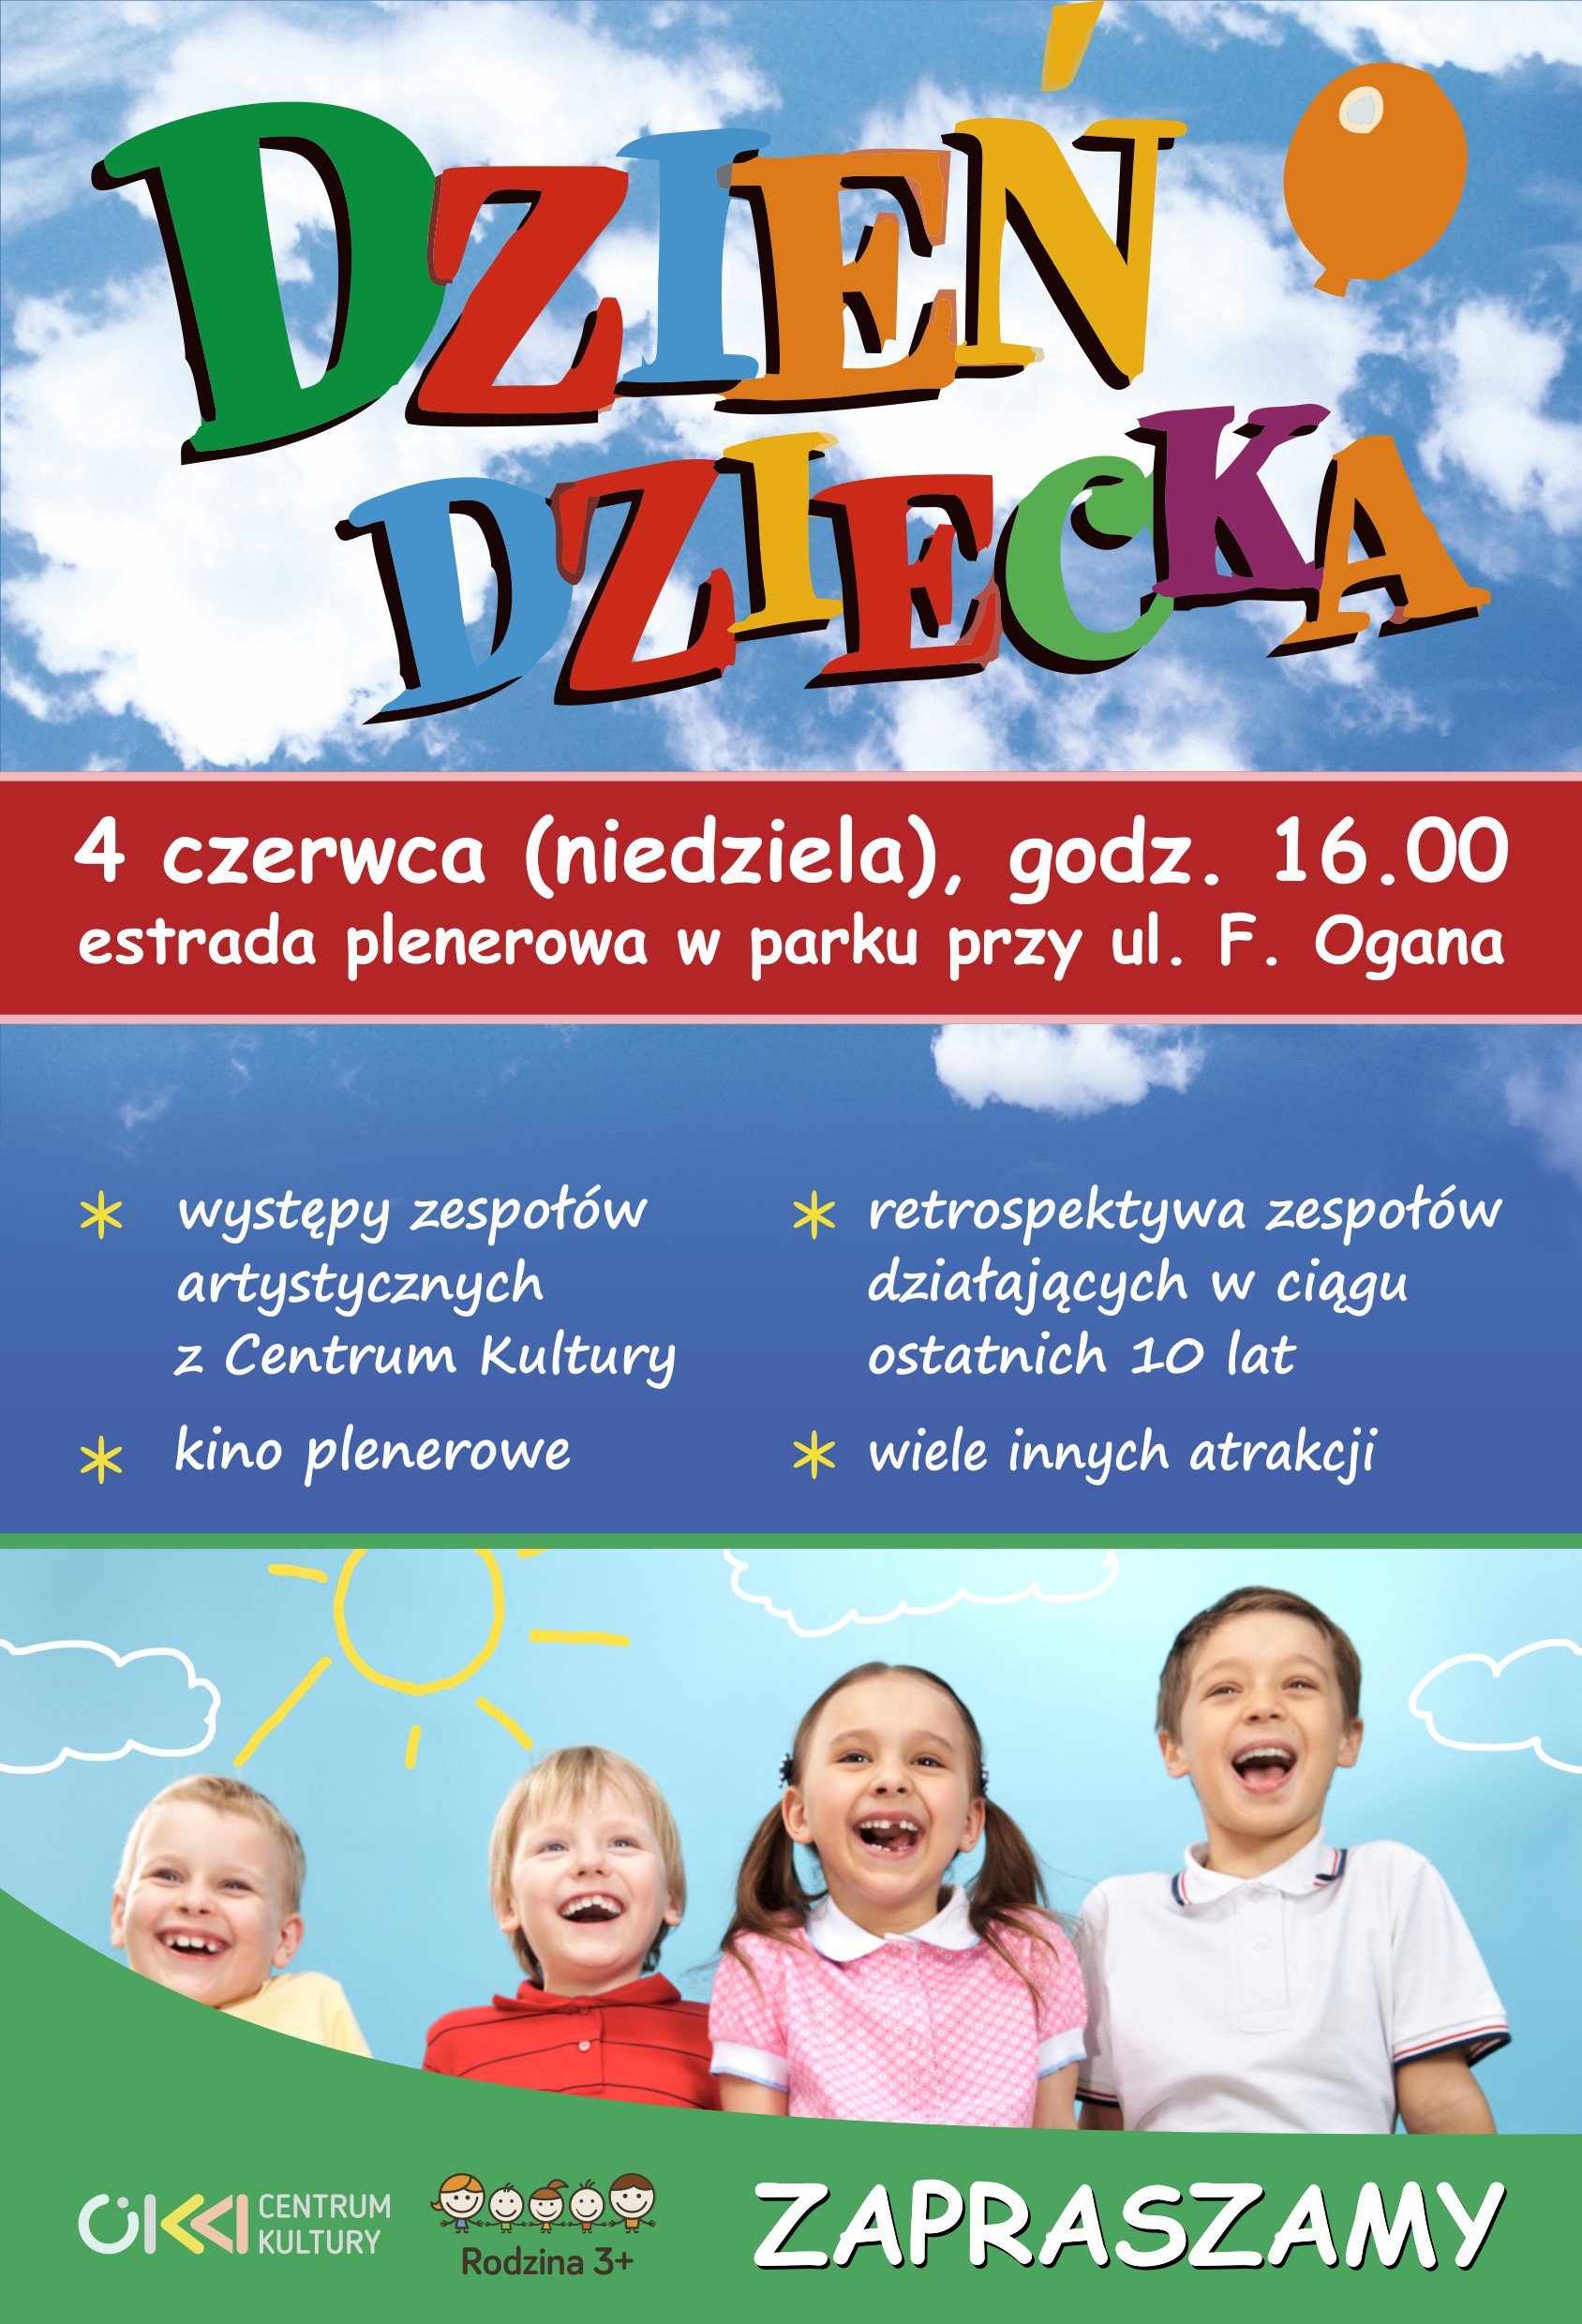 Dzień Dziecka – 4 czerwca godz. 16.00 | IKNW - iKnurów.pl